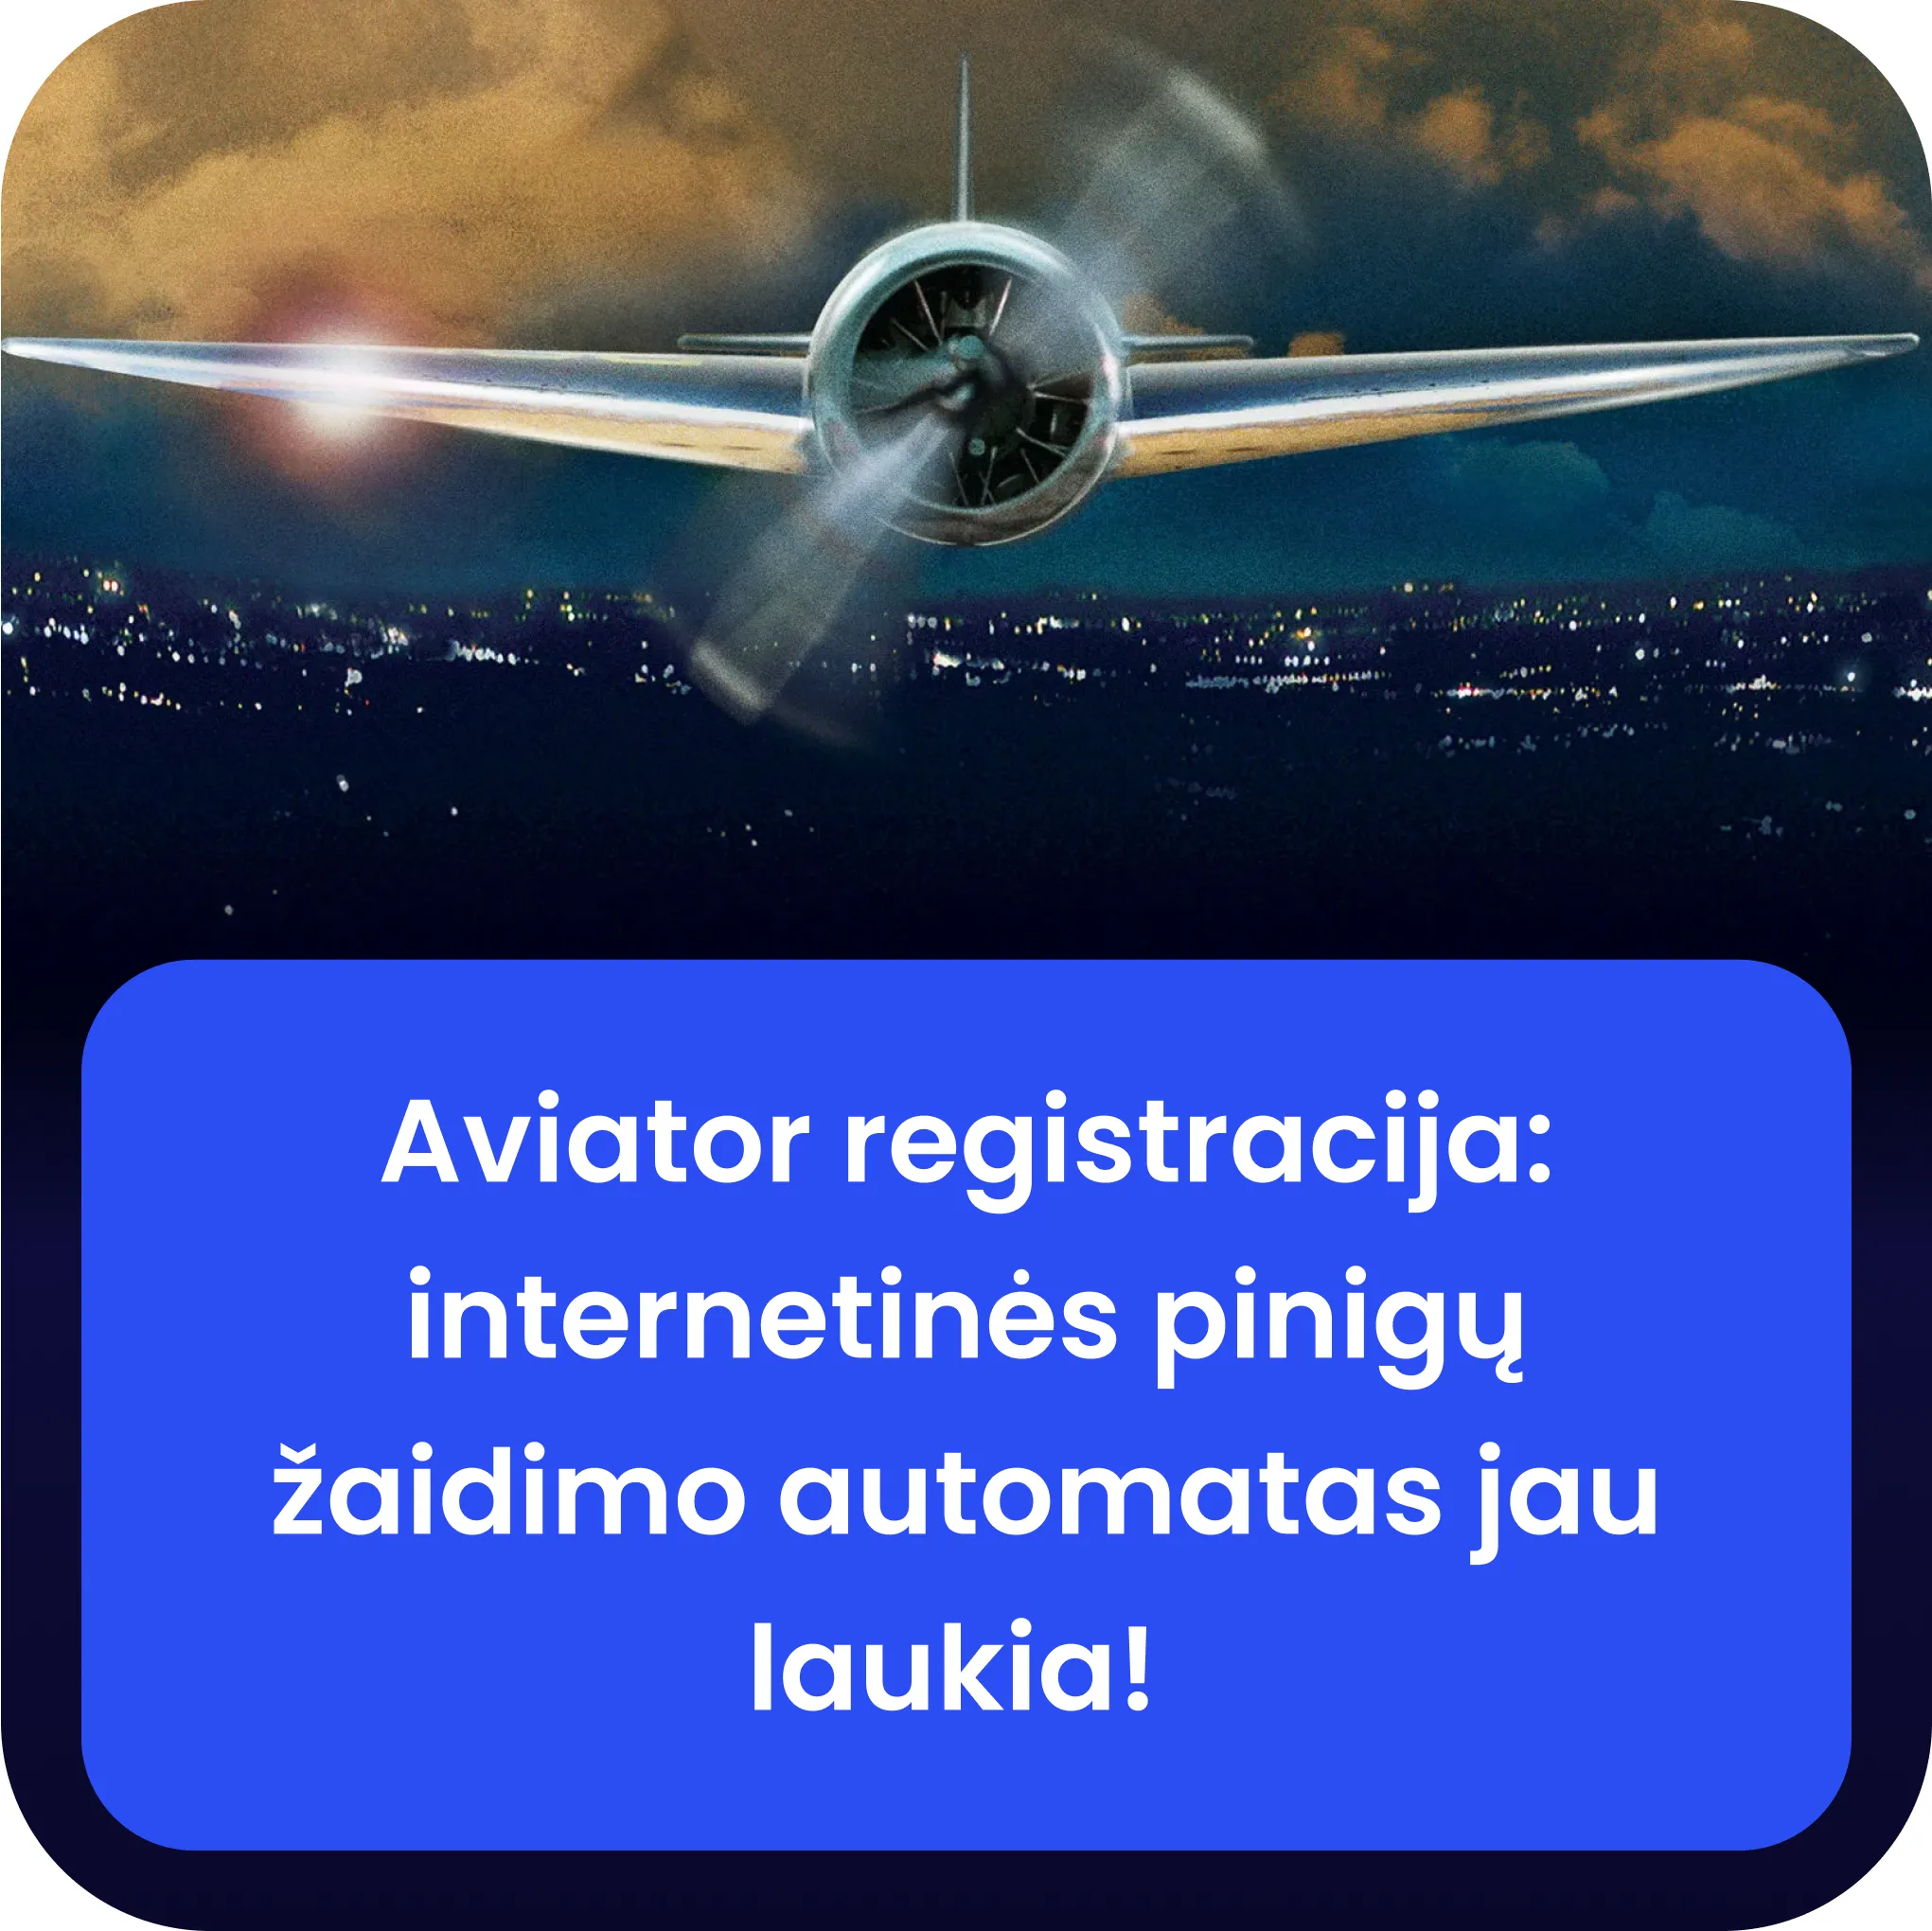 1xslots aviator Registruotis